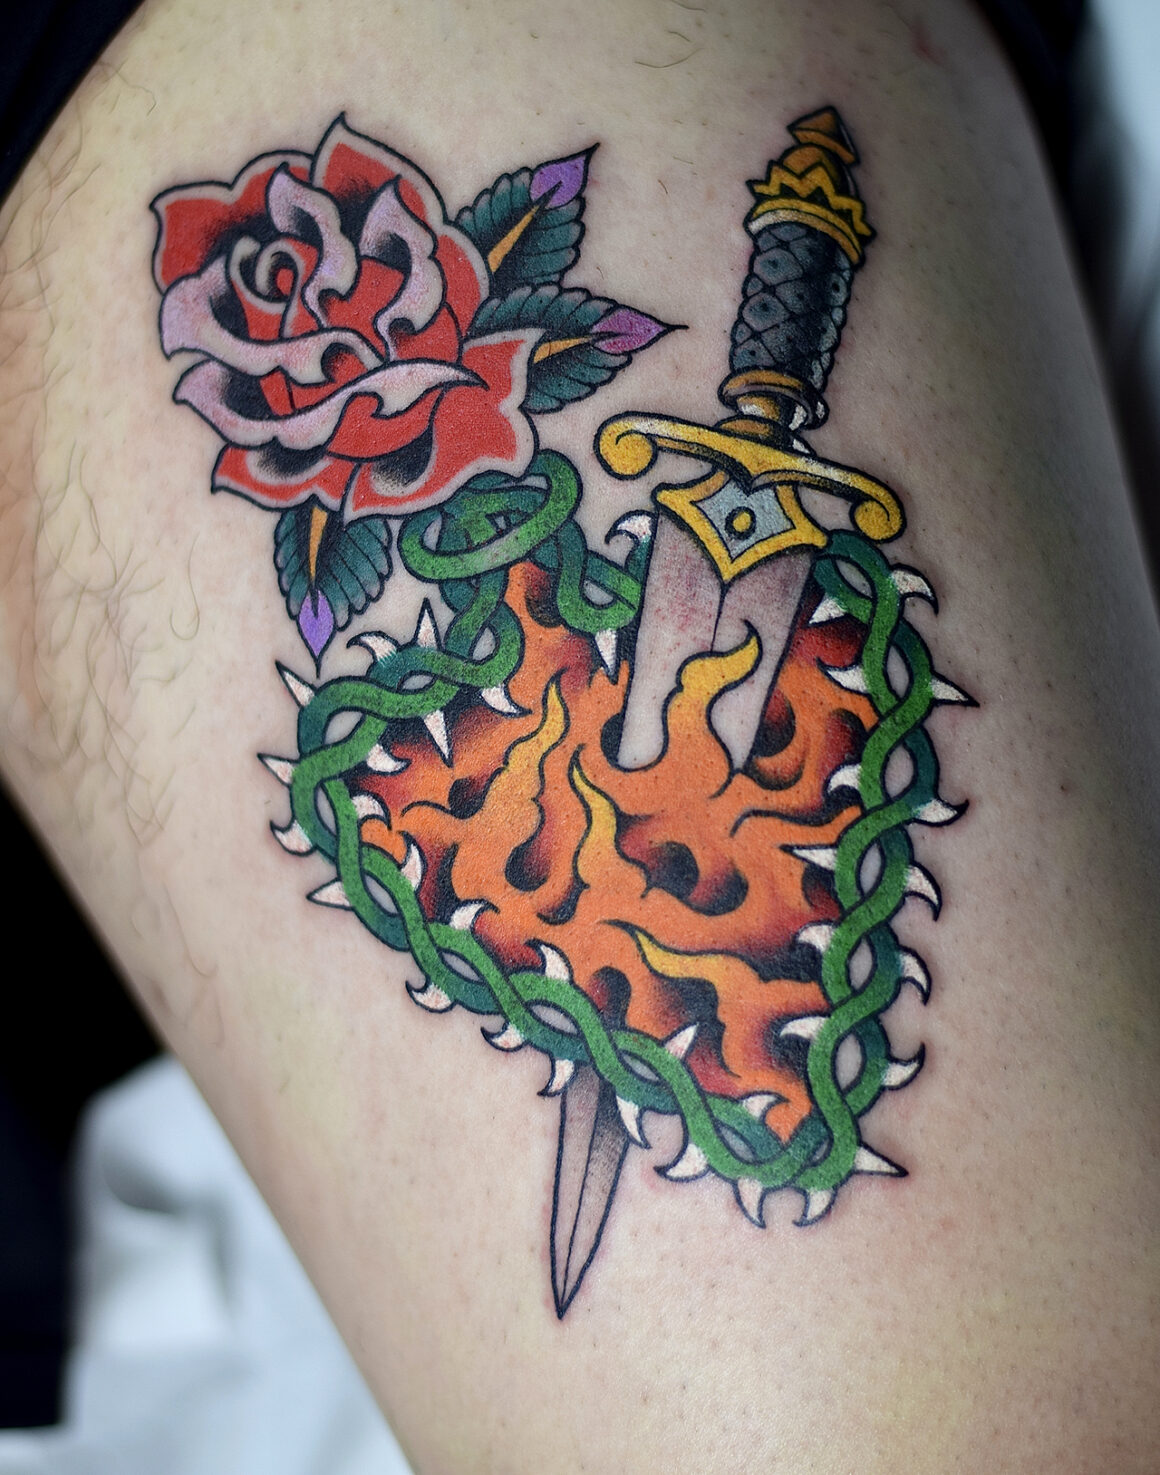 Tattoo by Adam Ruff, @adam_ruff